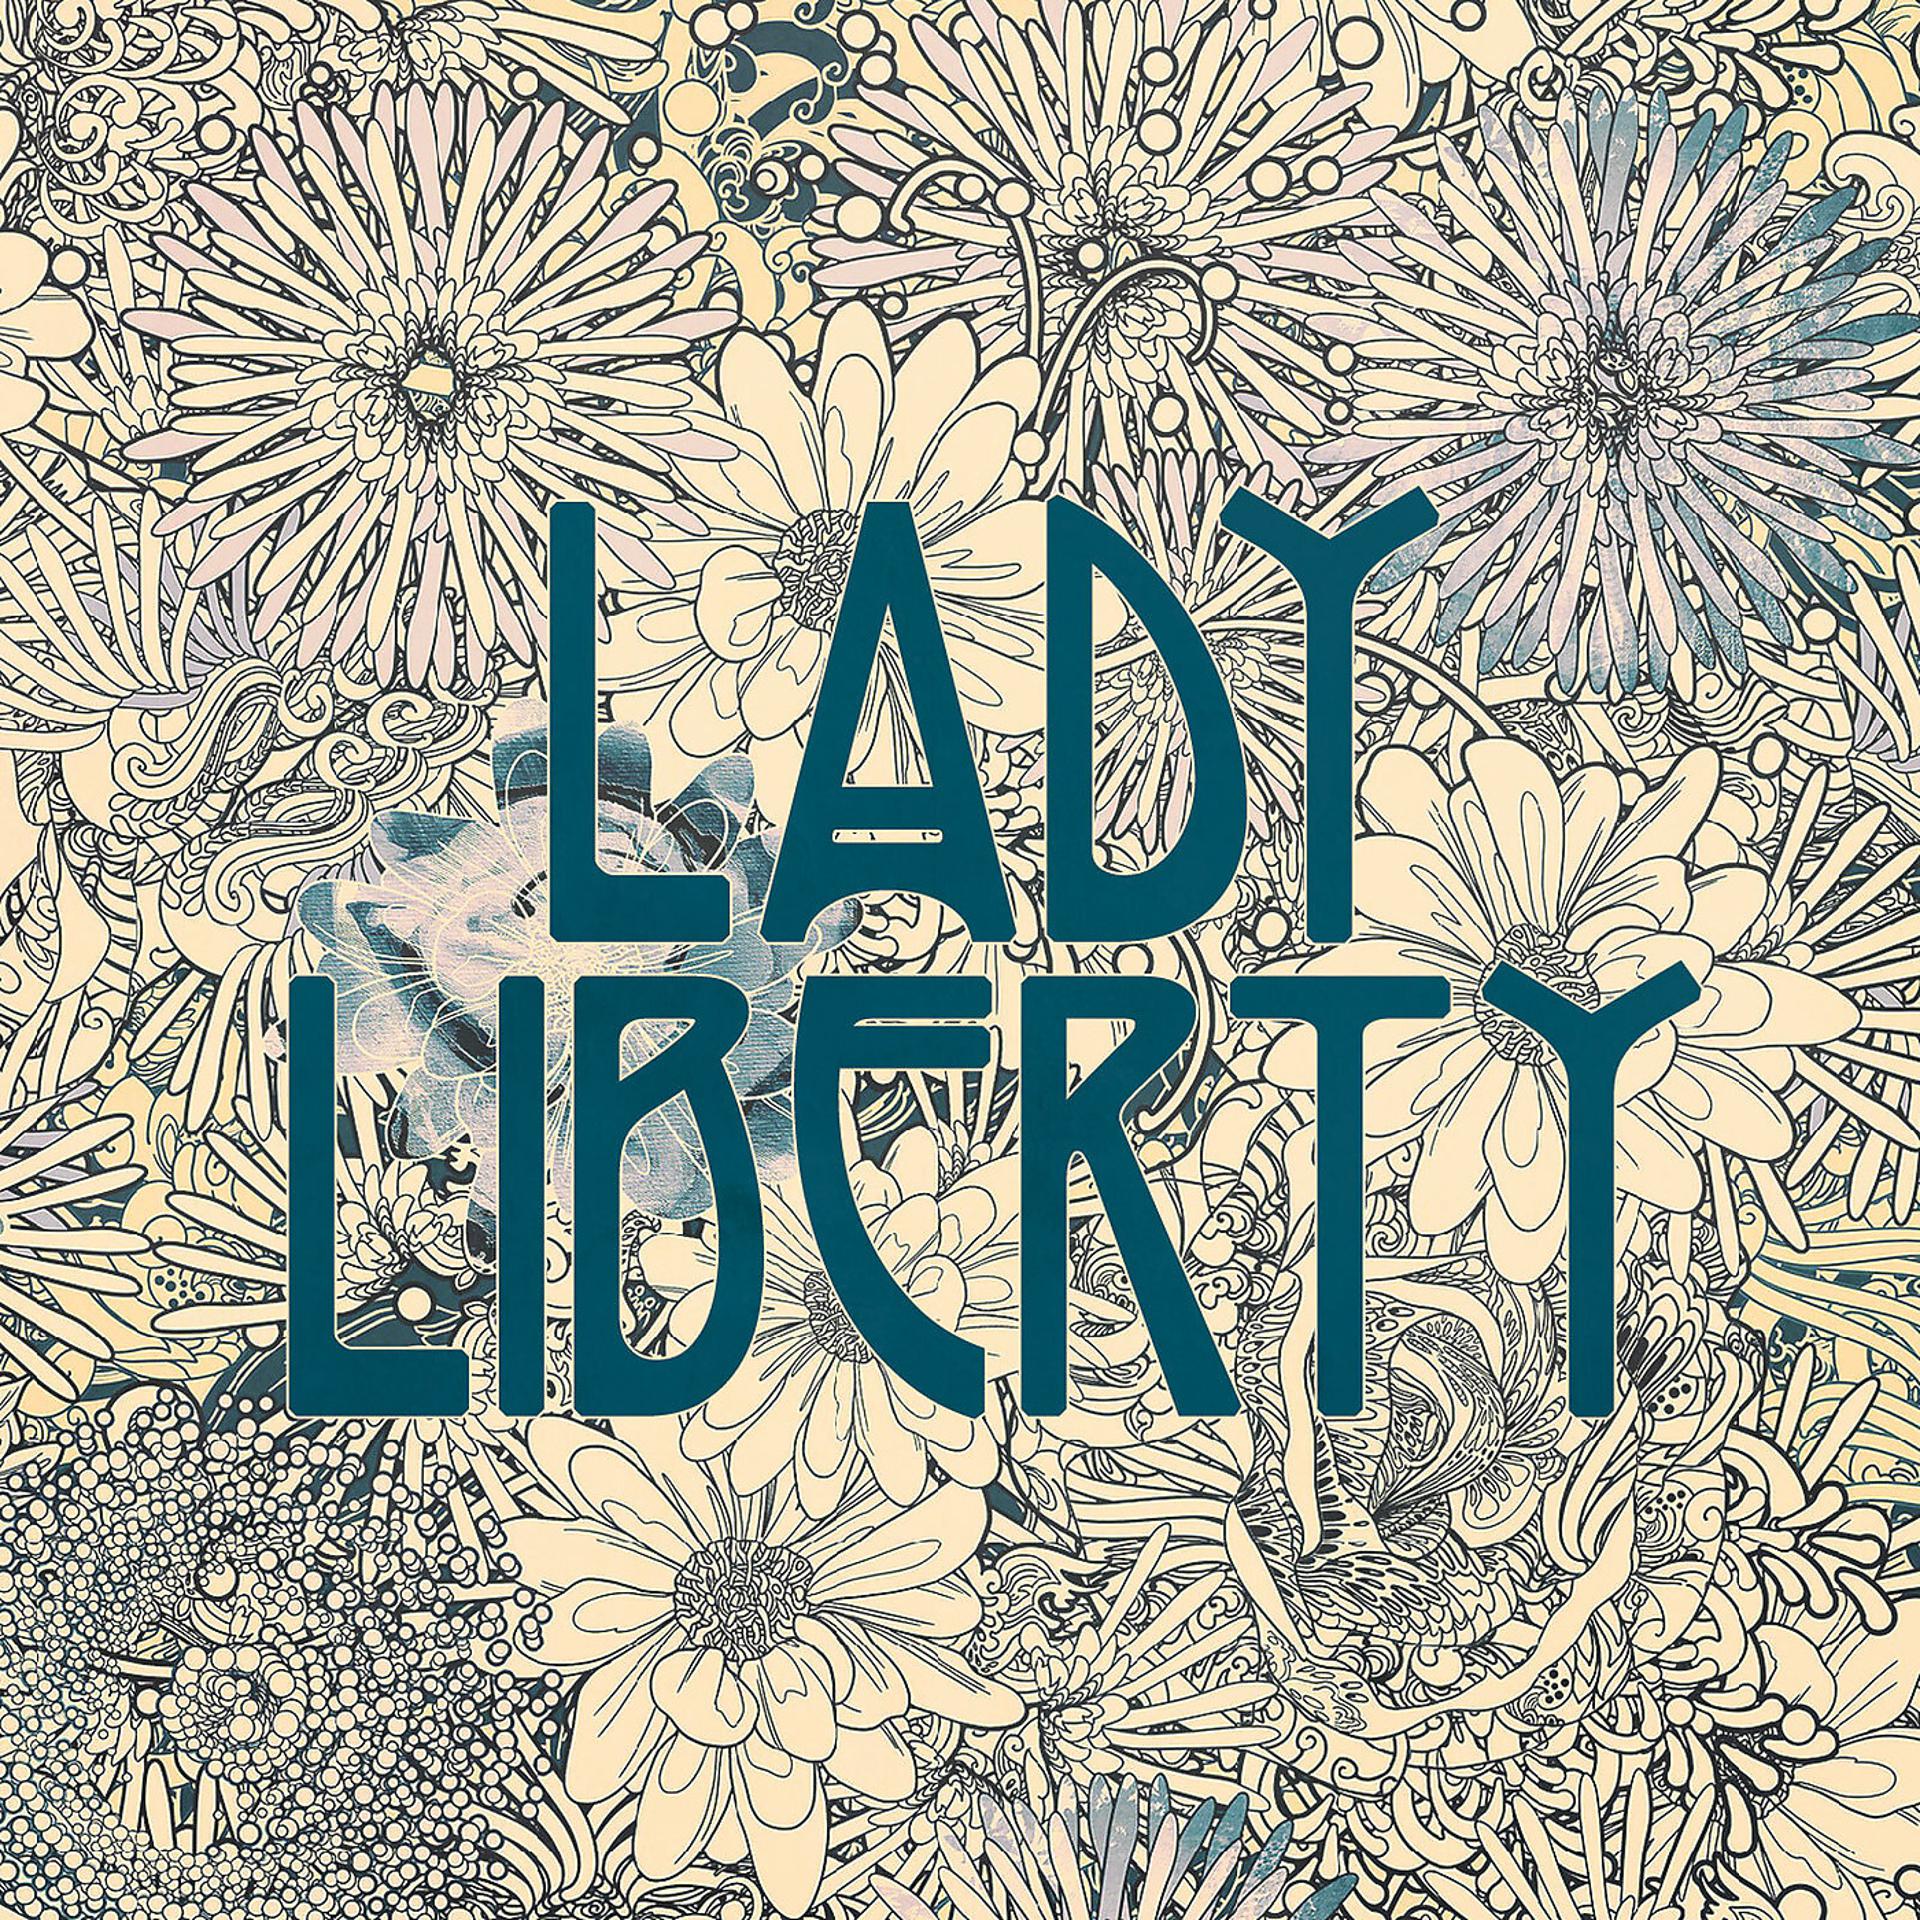 Lady freedom lady liberty. Liberty Power. Lady Liberty is Worth it.